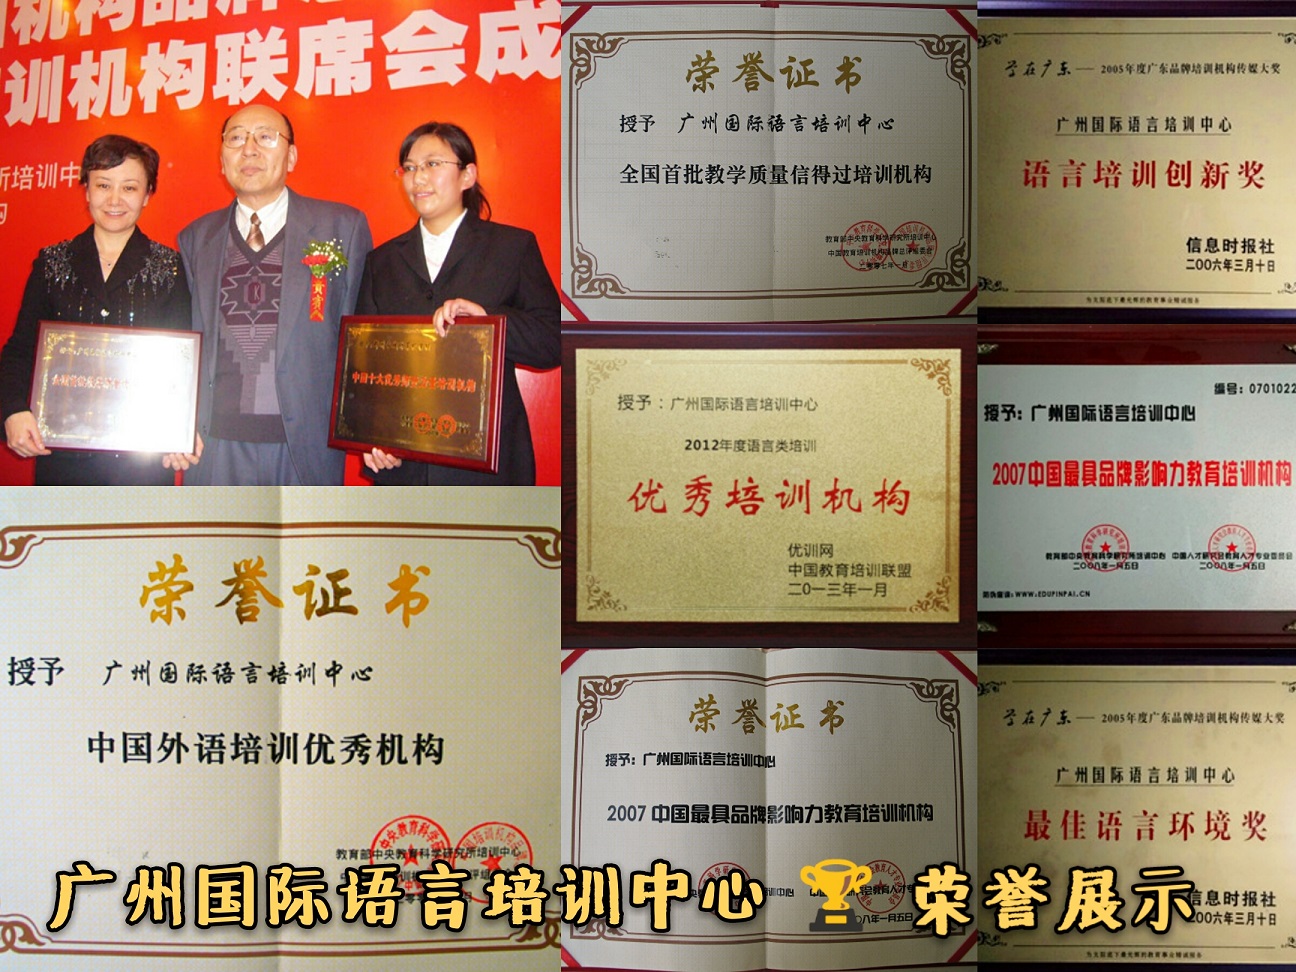 广州国际语言培训中心所获荣誉奖项展示